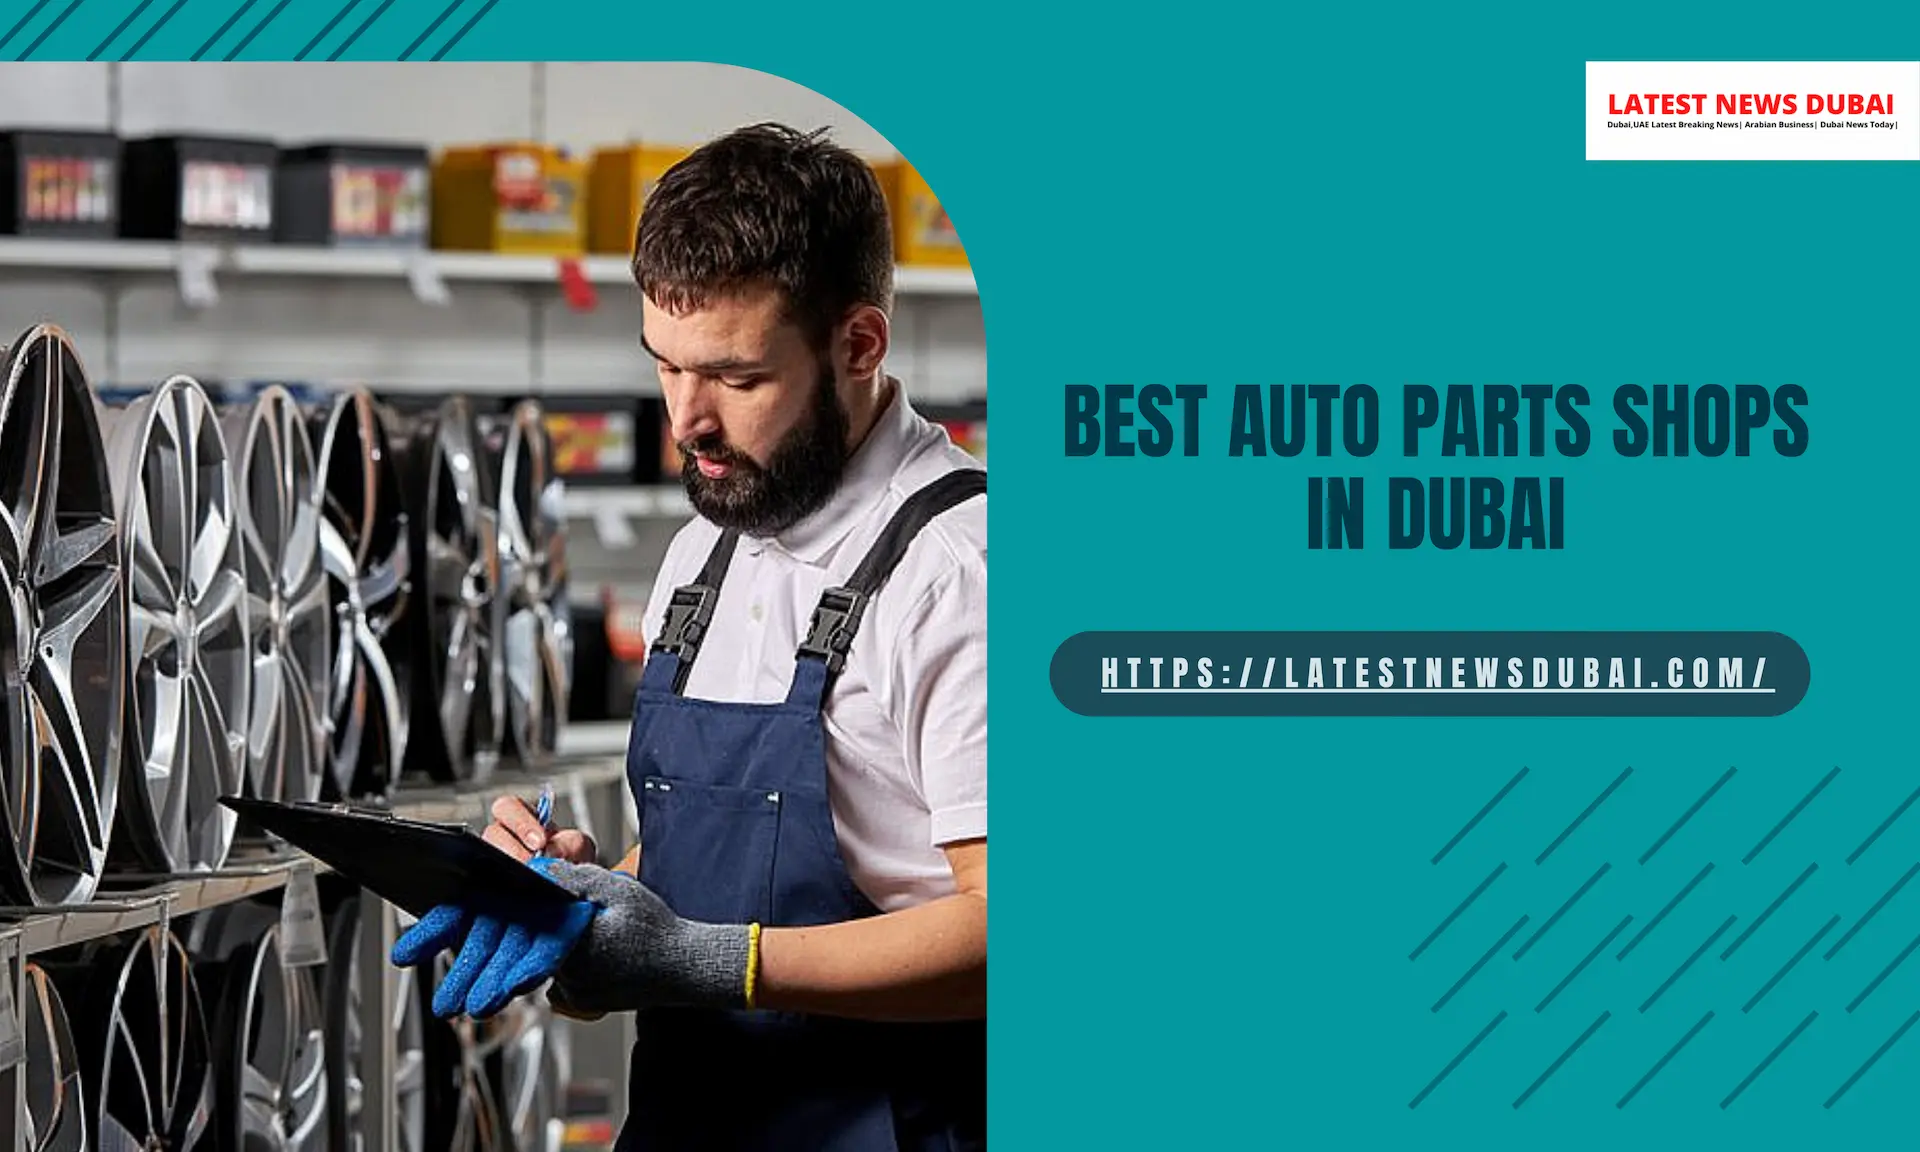 Auto Parts Shops in Dubai